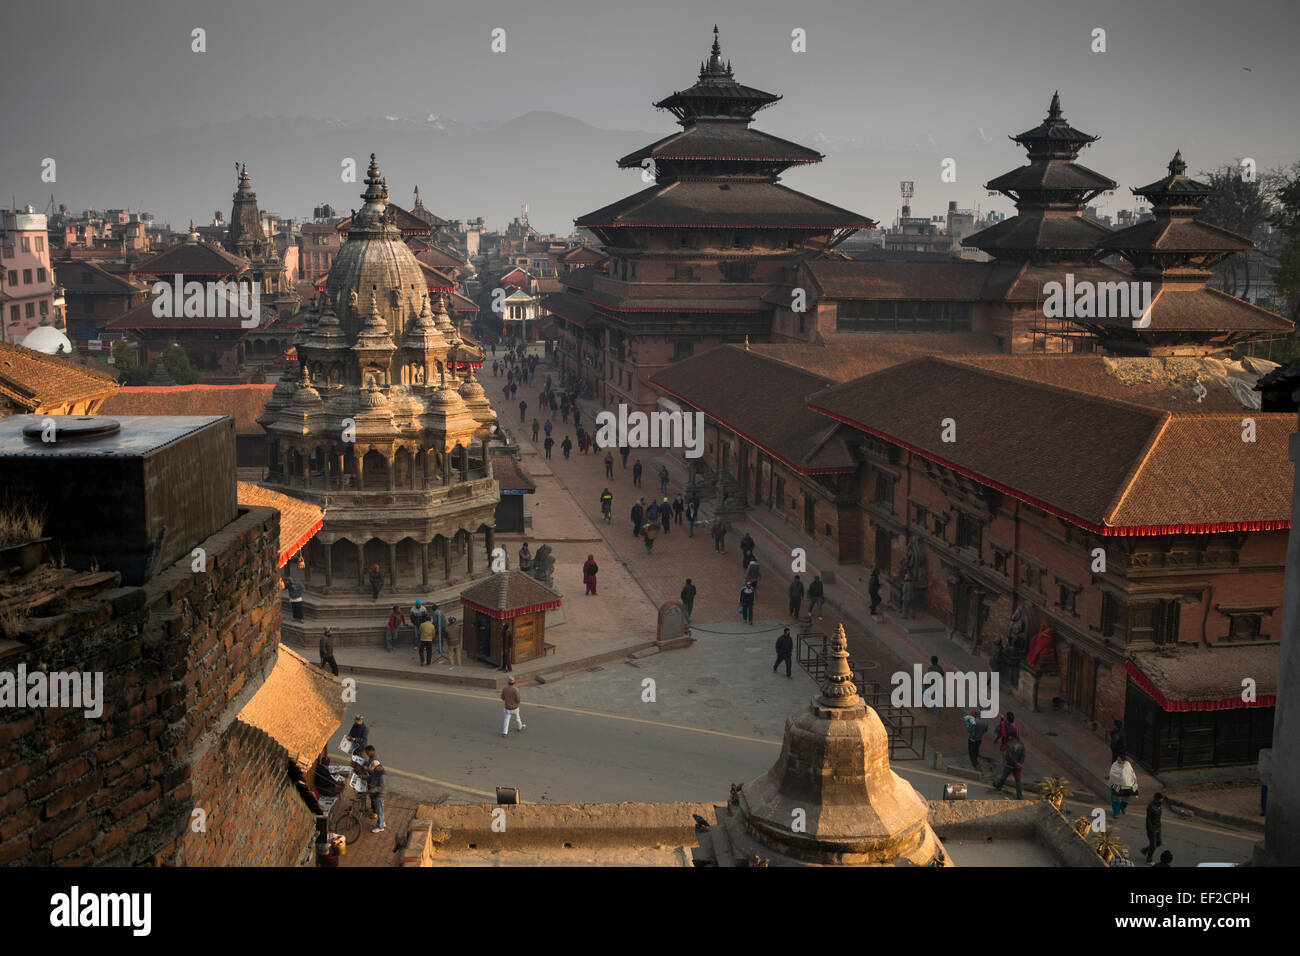 Scène de Durbar Square, Patan (Lalitpur) - La Vallée de Katmandou, Népal Banque D'Images